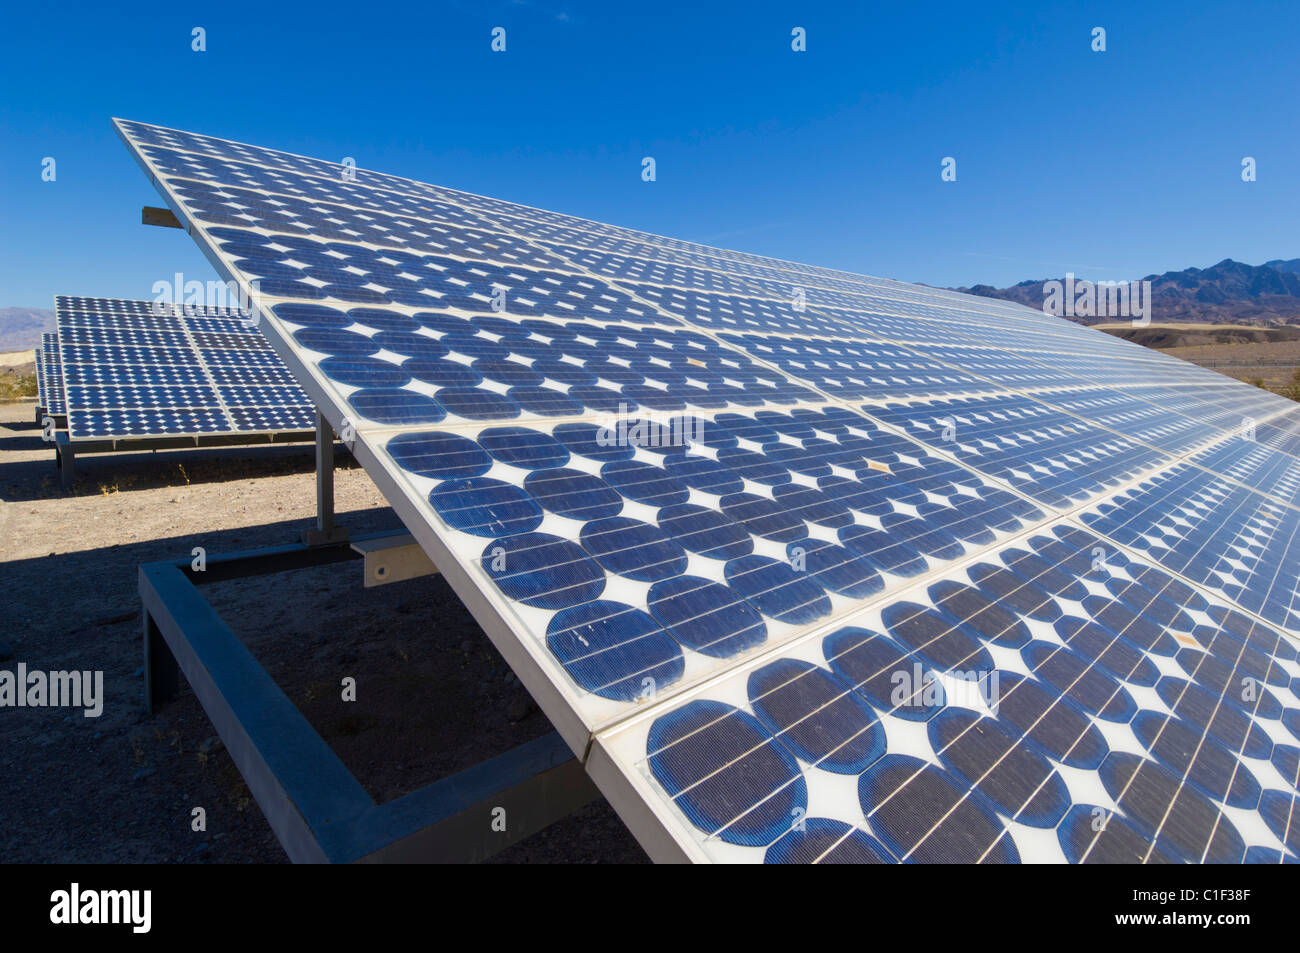 Una serie solare di pannelli solari in un sistema solare fotovoltaico (PV)  di energia a Furnace Creek resort, Death Valley National Park, California,  stati uniti Foto stock - Alamy